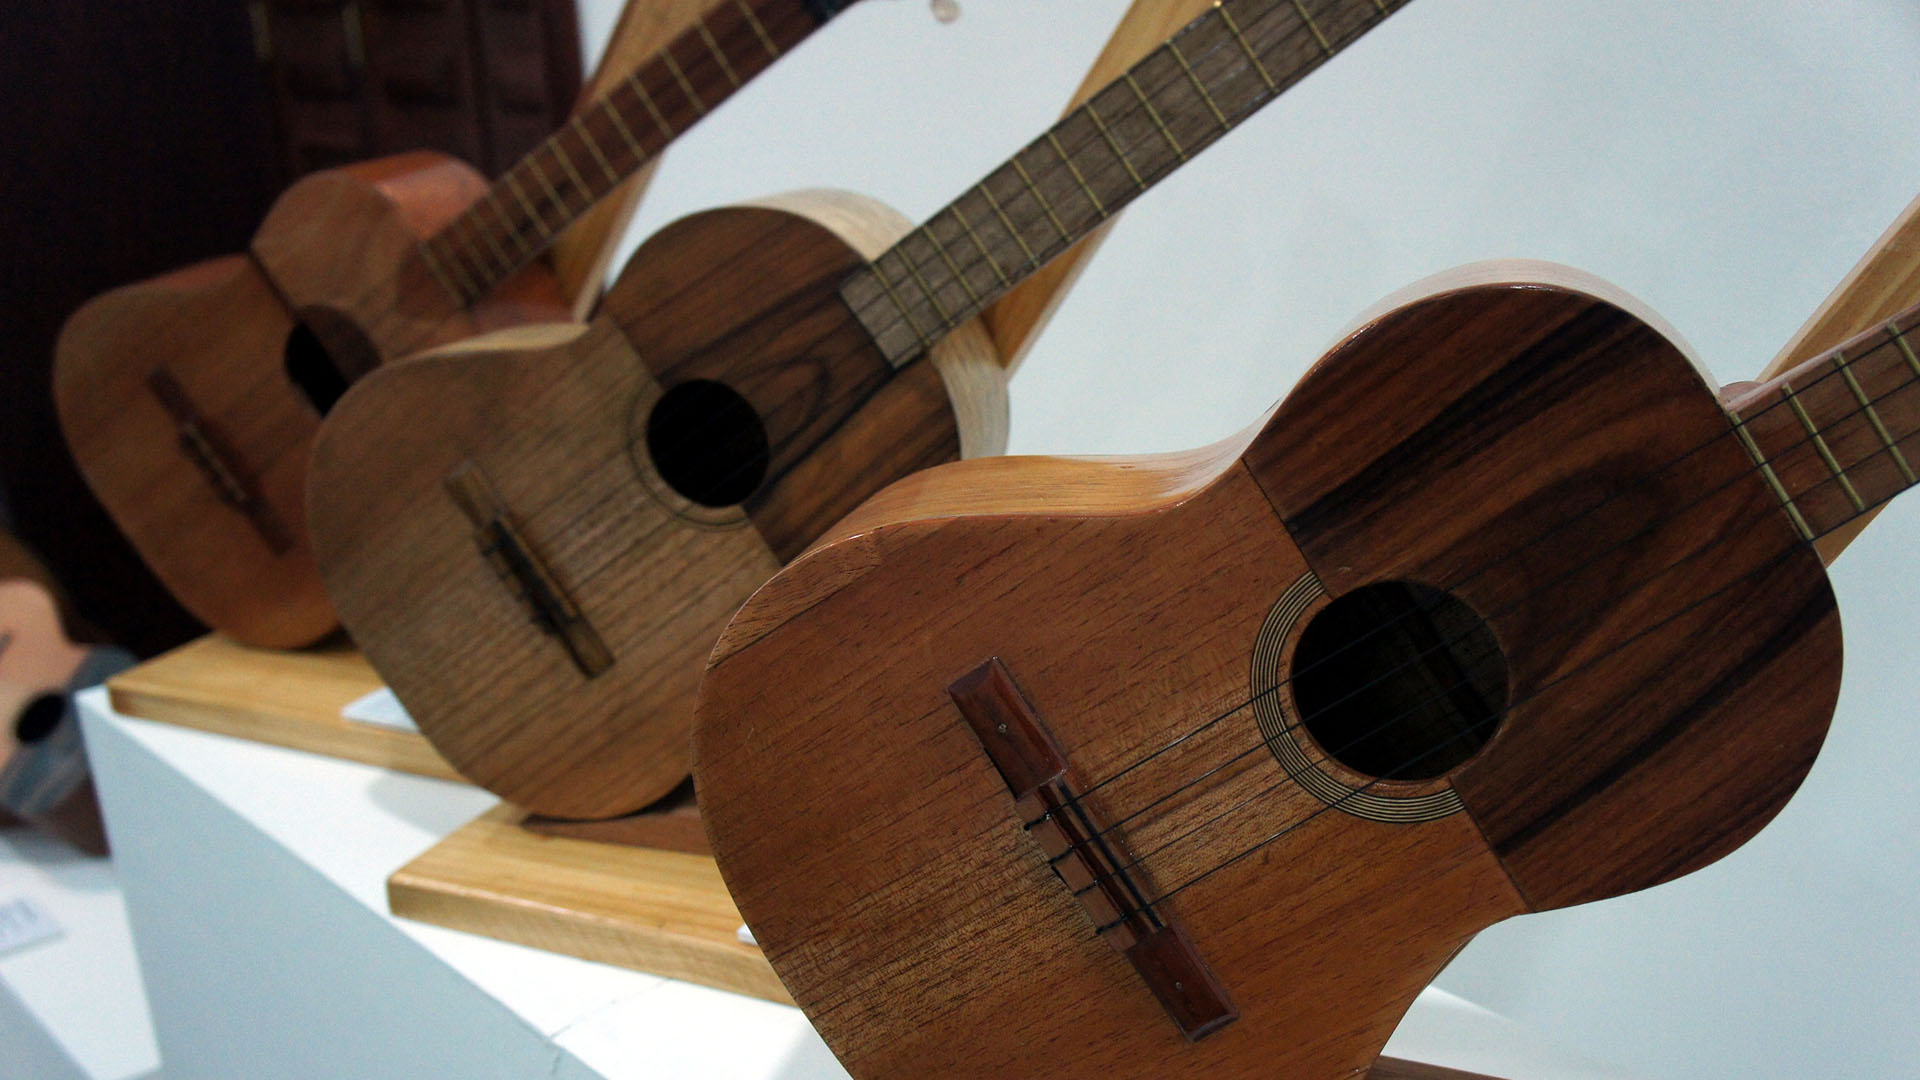 Son más de 500 instrumentos fabricados por artesanos marabinos